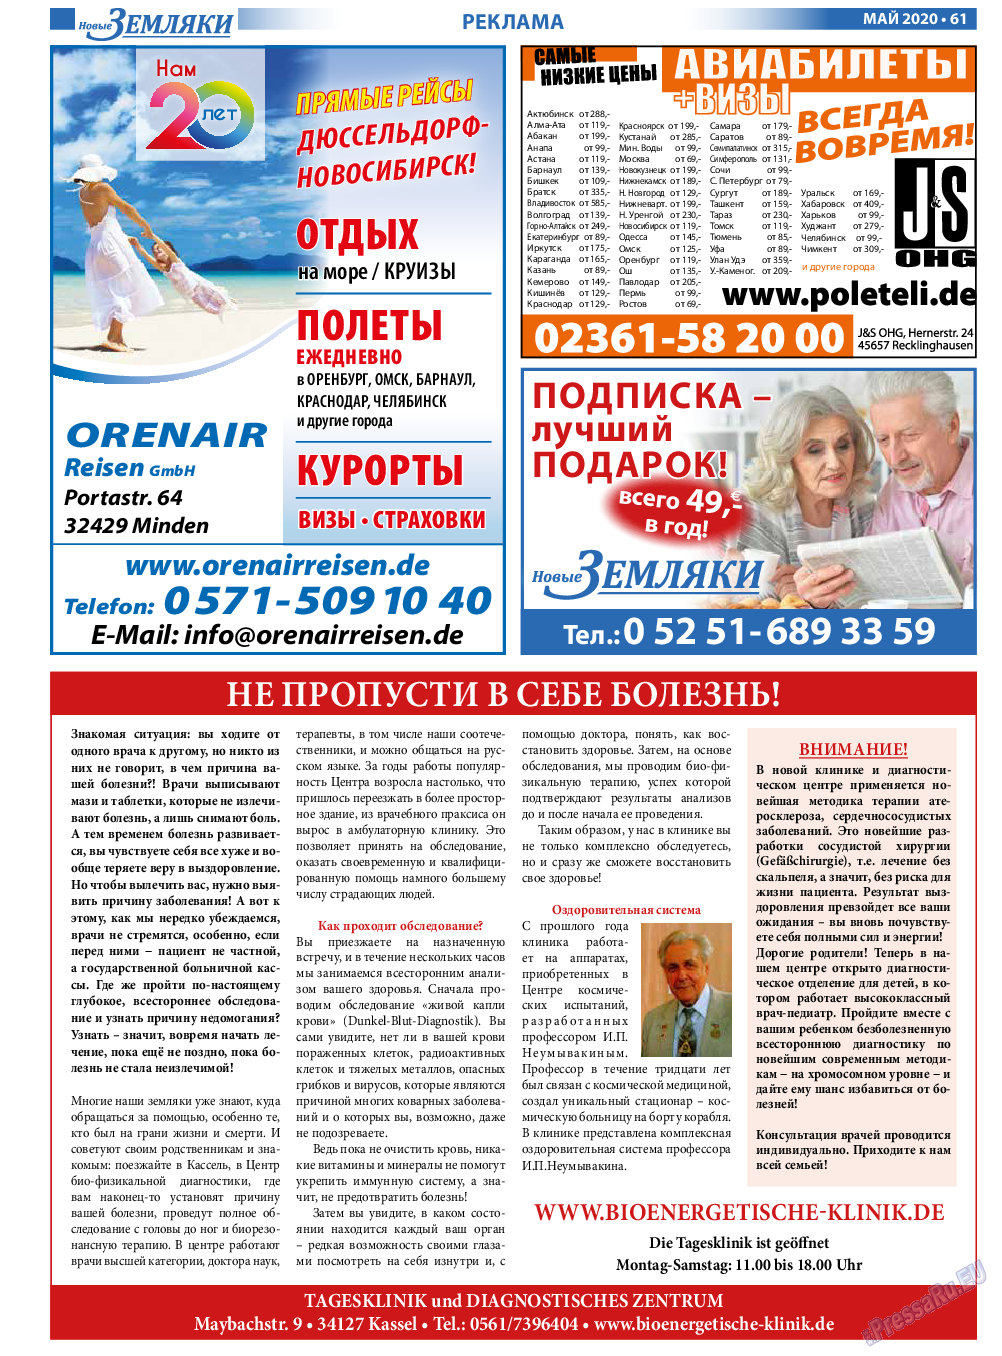 Новые Земляки, газета. 2020 №5 стр.61